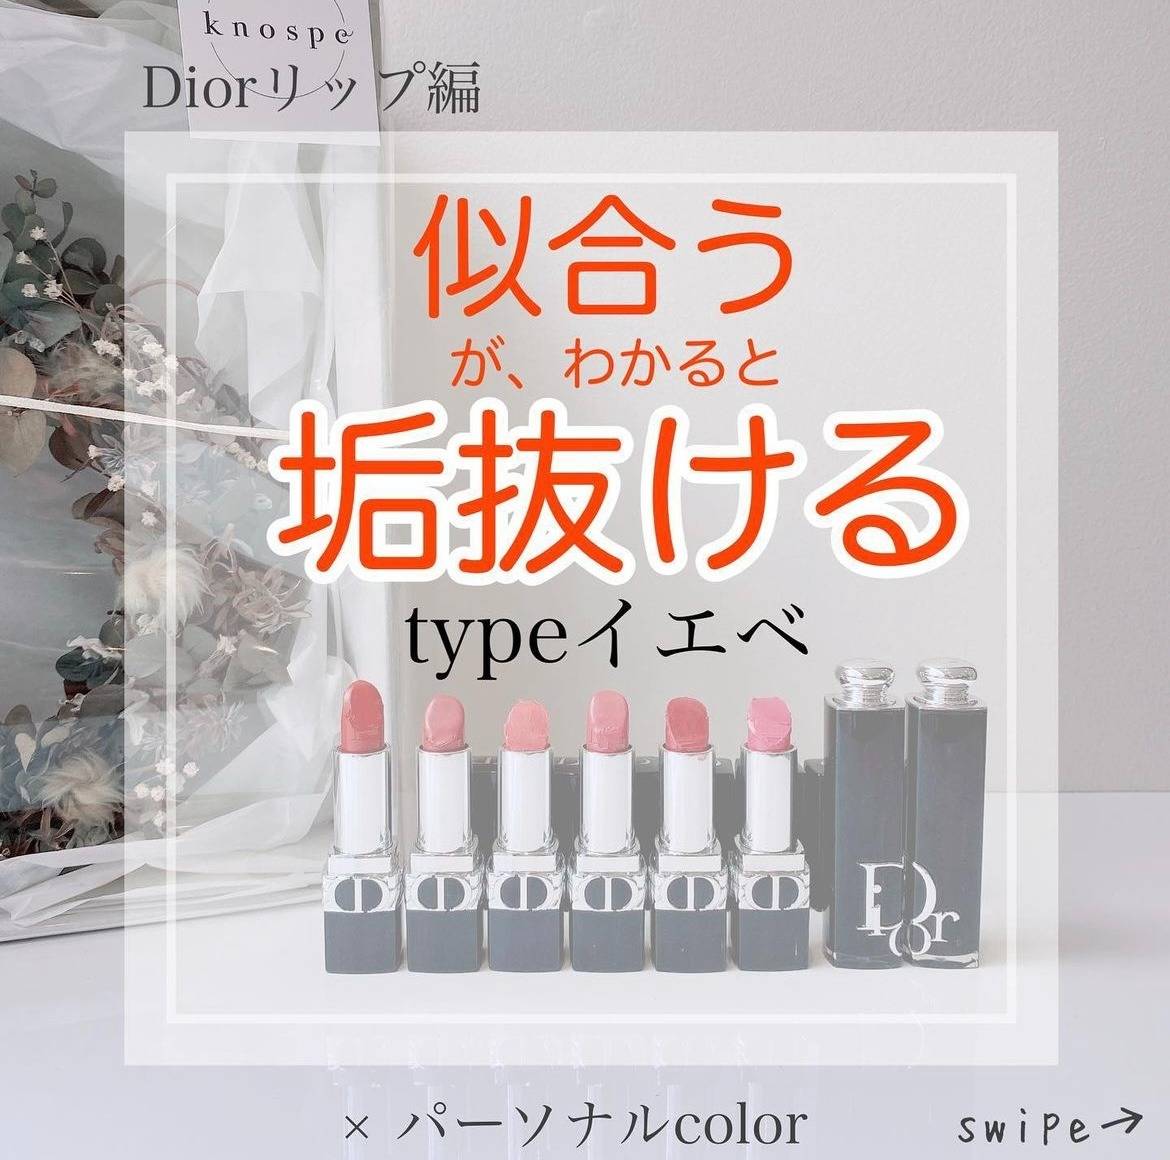 「垢抜け」リップ〜Dior編〜forイエベ